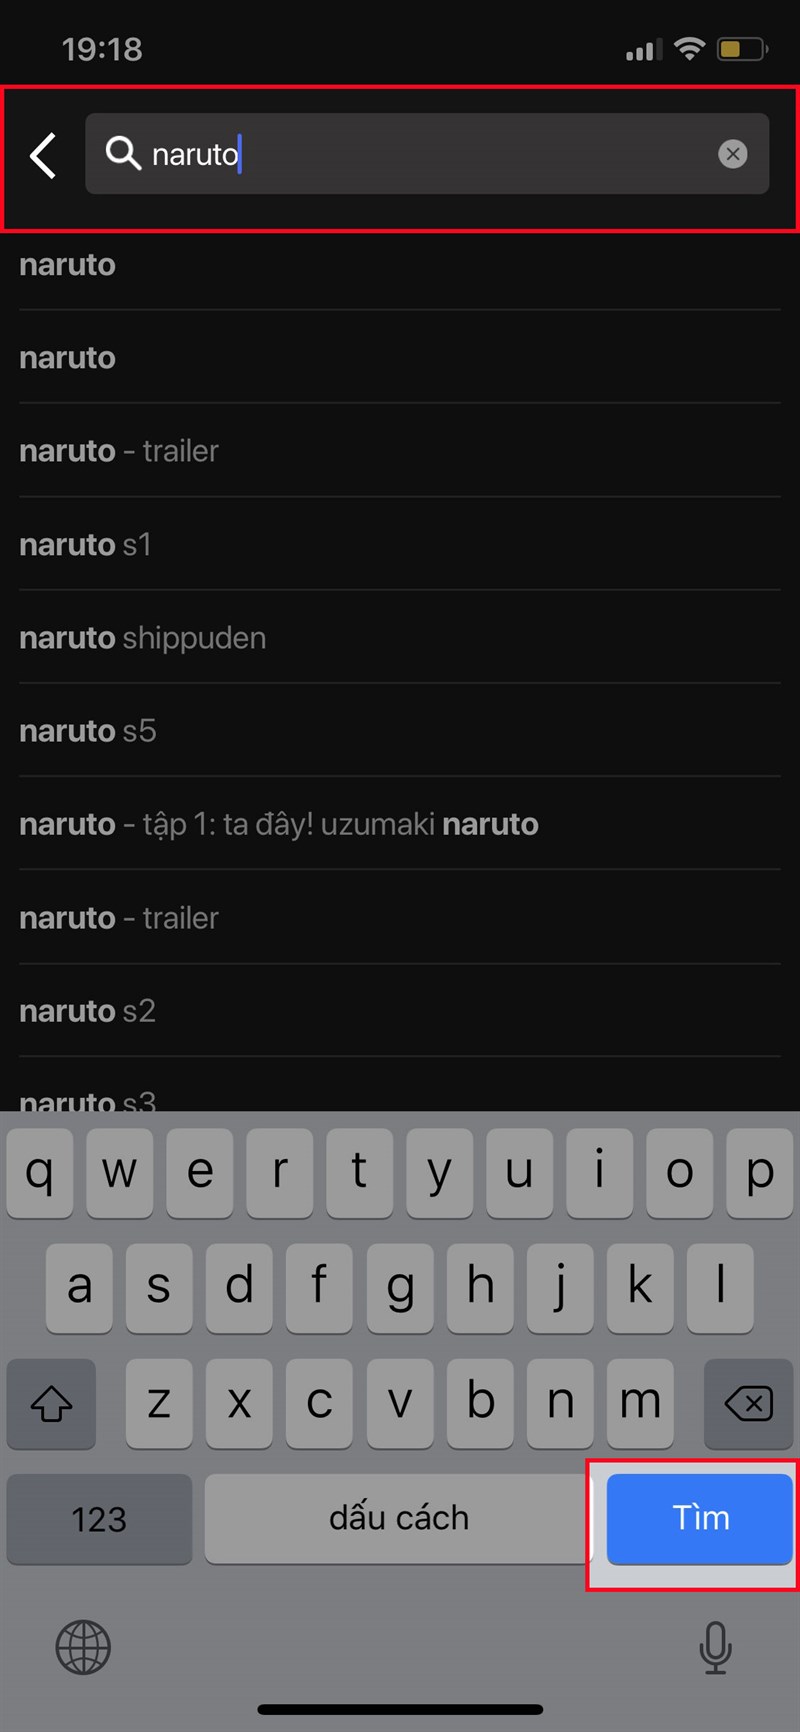 Gõ tìm kiếm Naruto > Nhấn Tìm